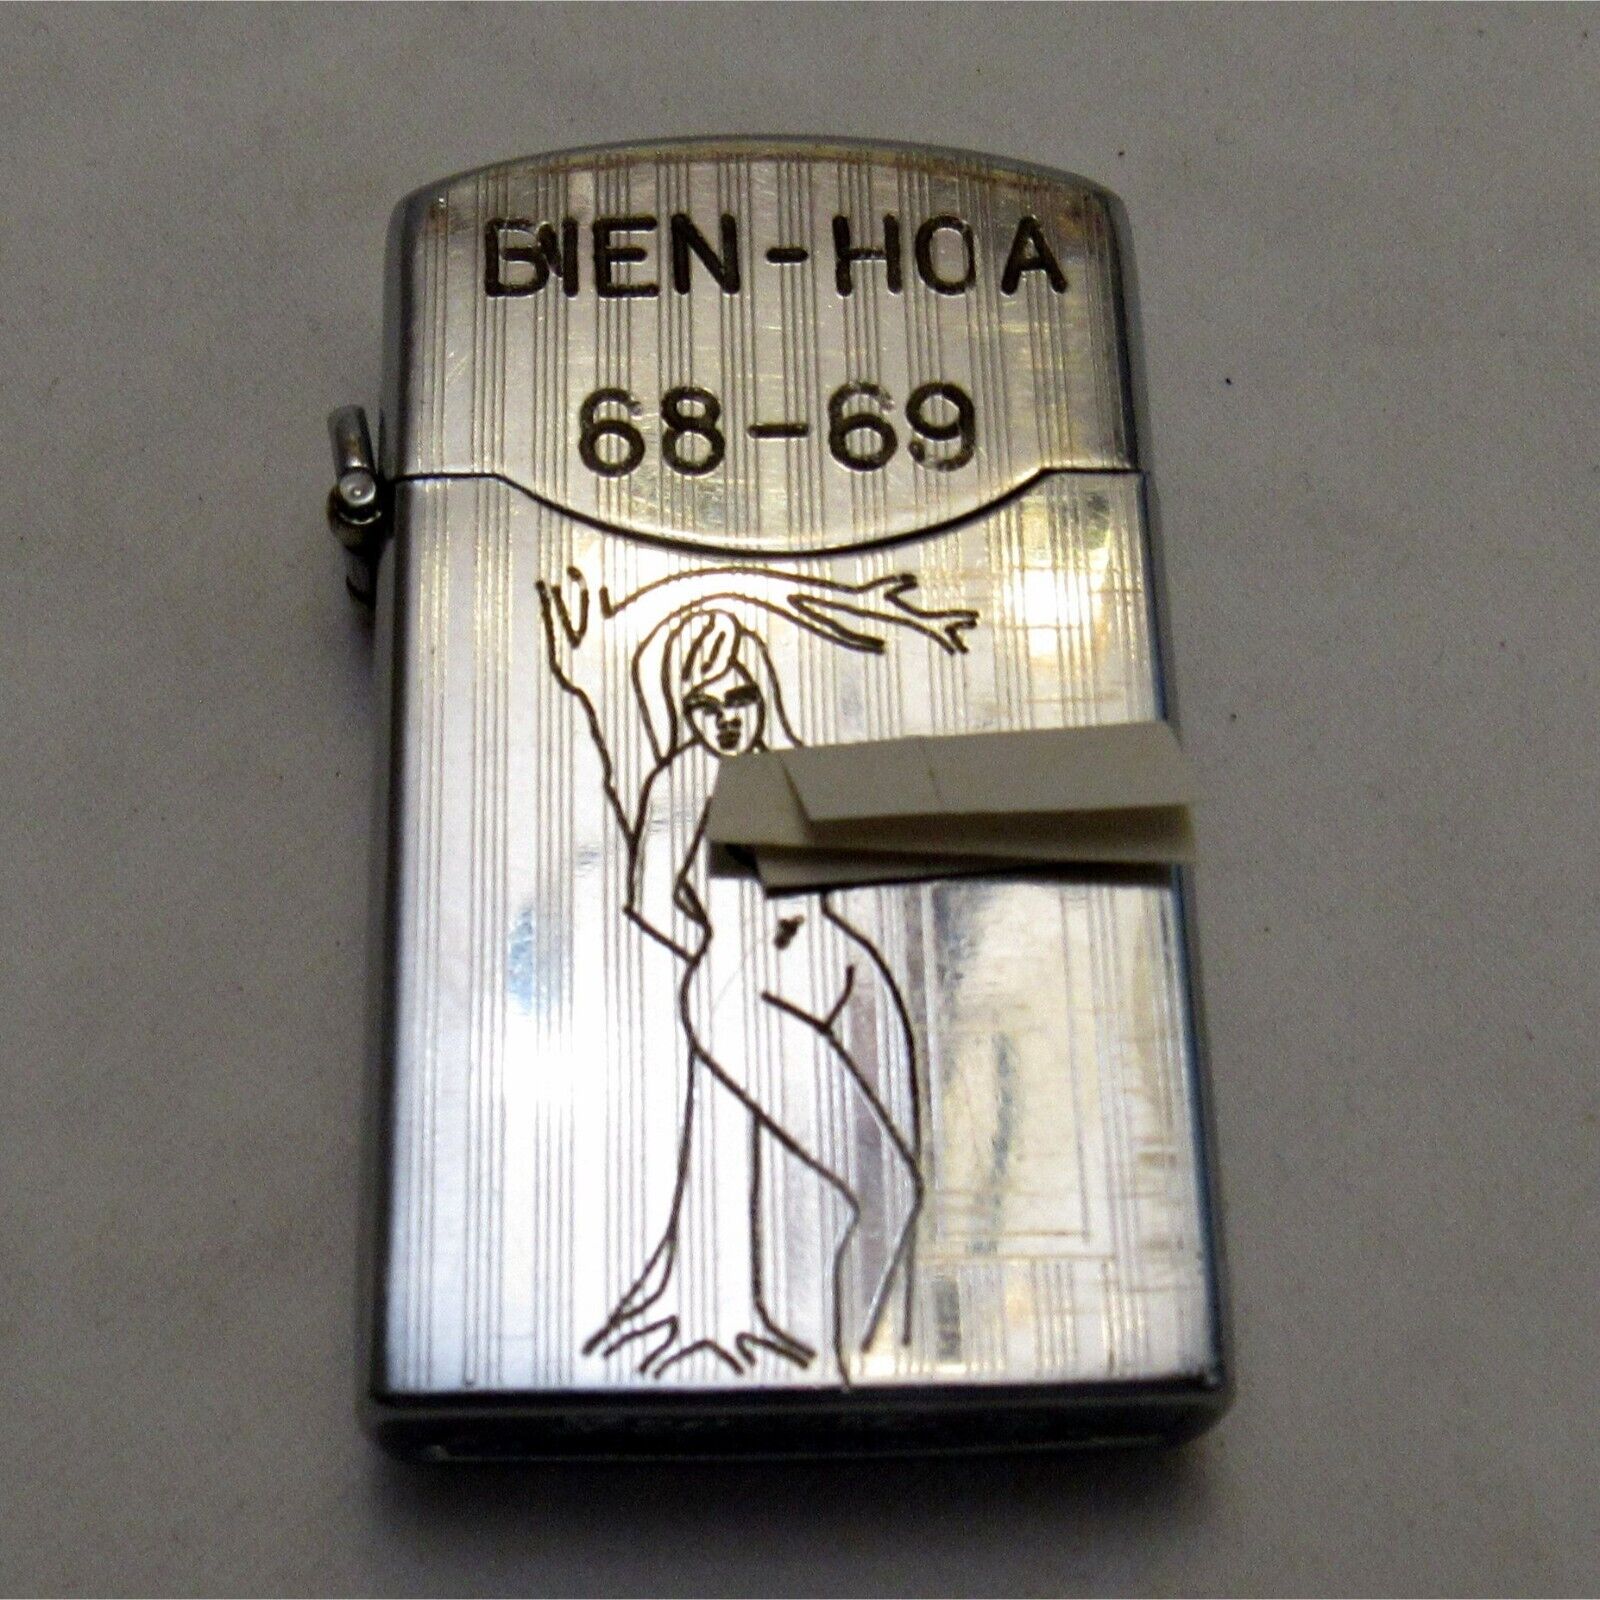 Vintage Zenith Lighter Bien Hoa Vietnam 68-69 Engraved Both Sides Pinup Untested